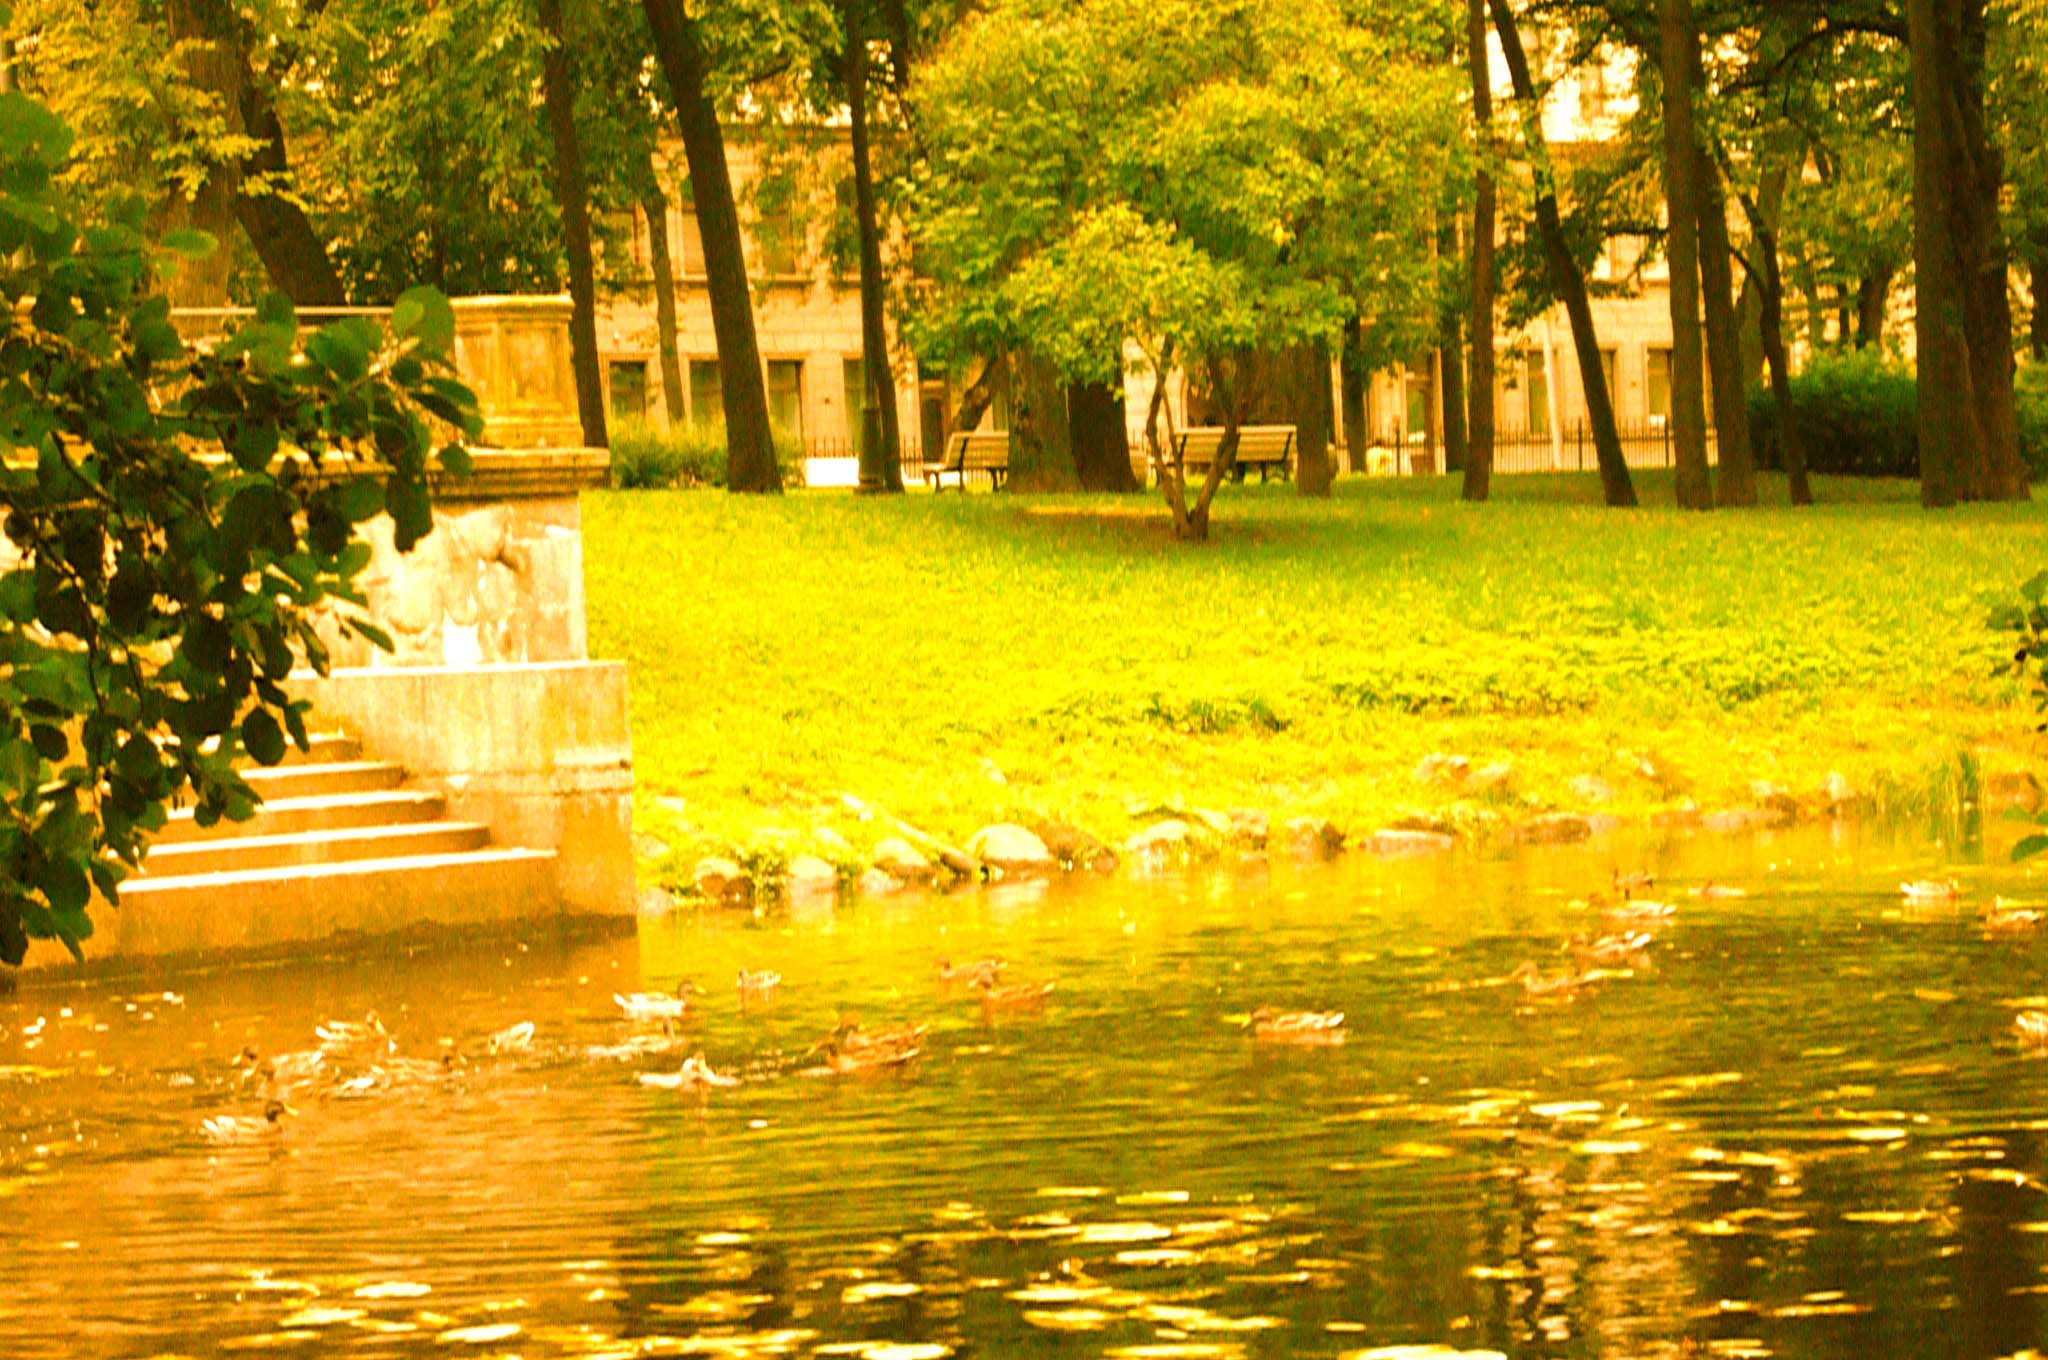 Yelagin park lake at Saint-Petersburg [Alexander Shemetev]